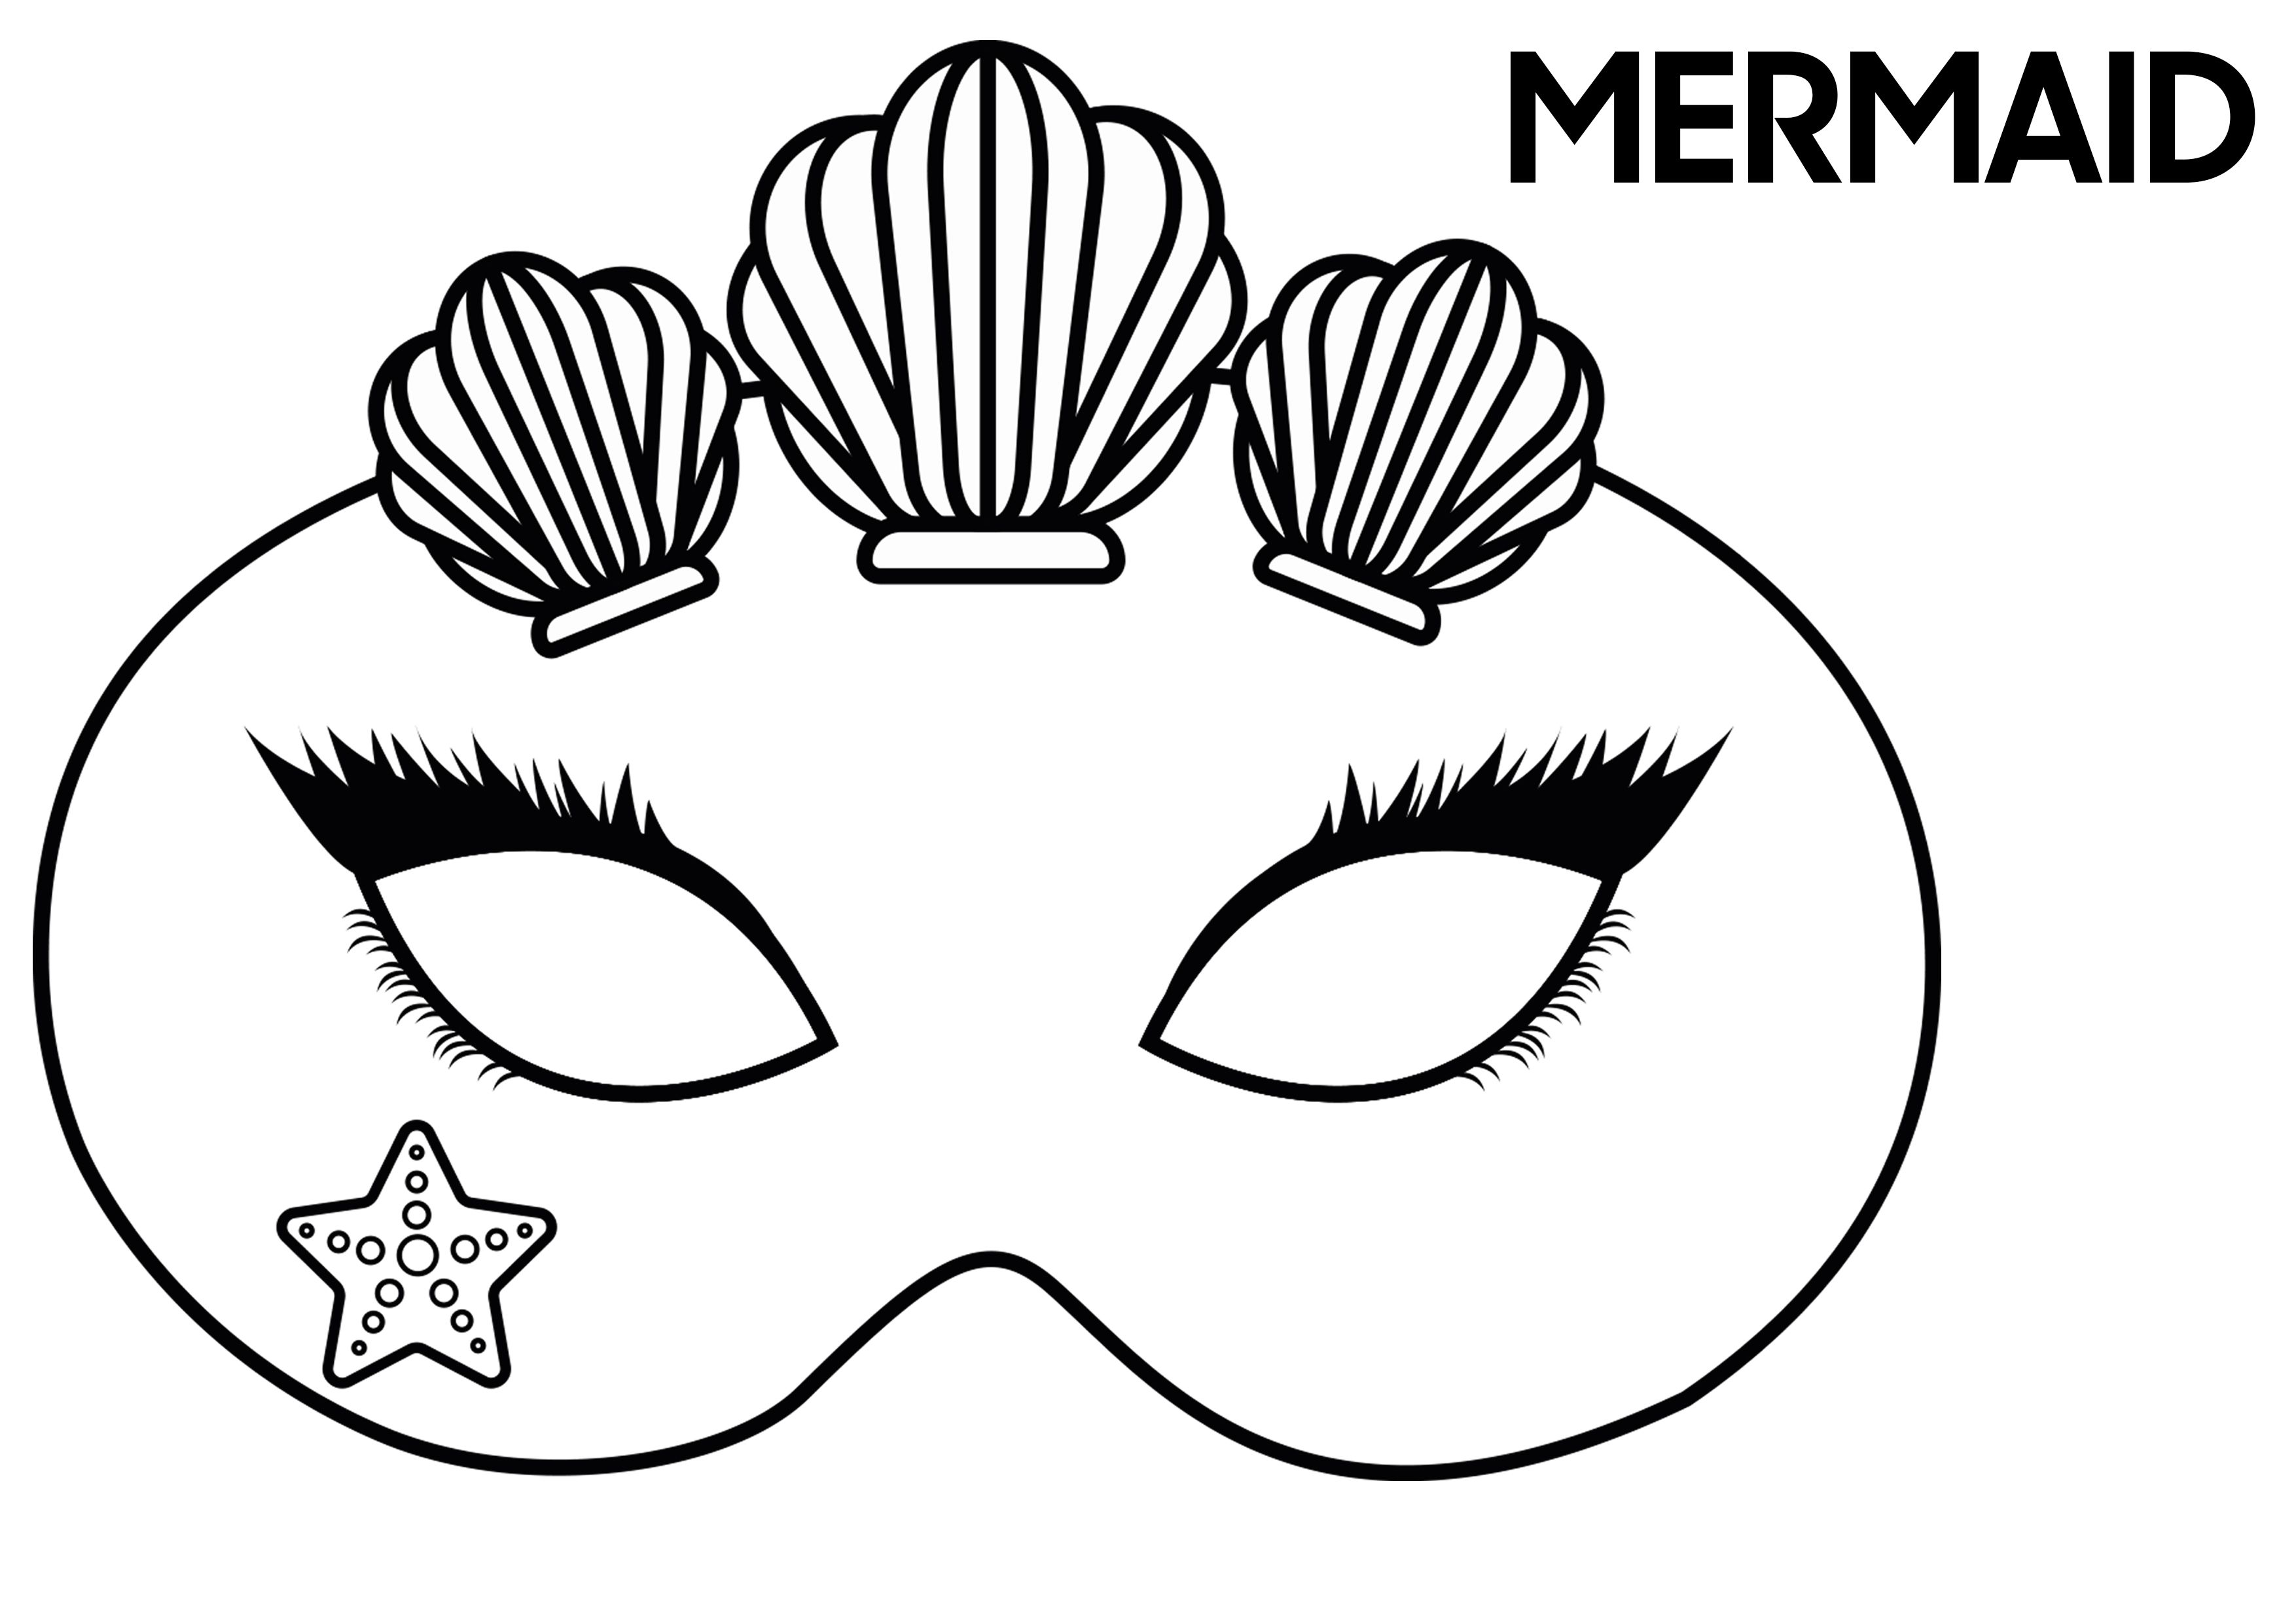 MERMAID inspired festival mask